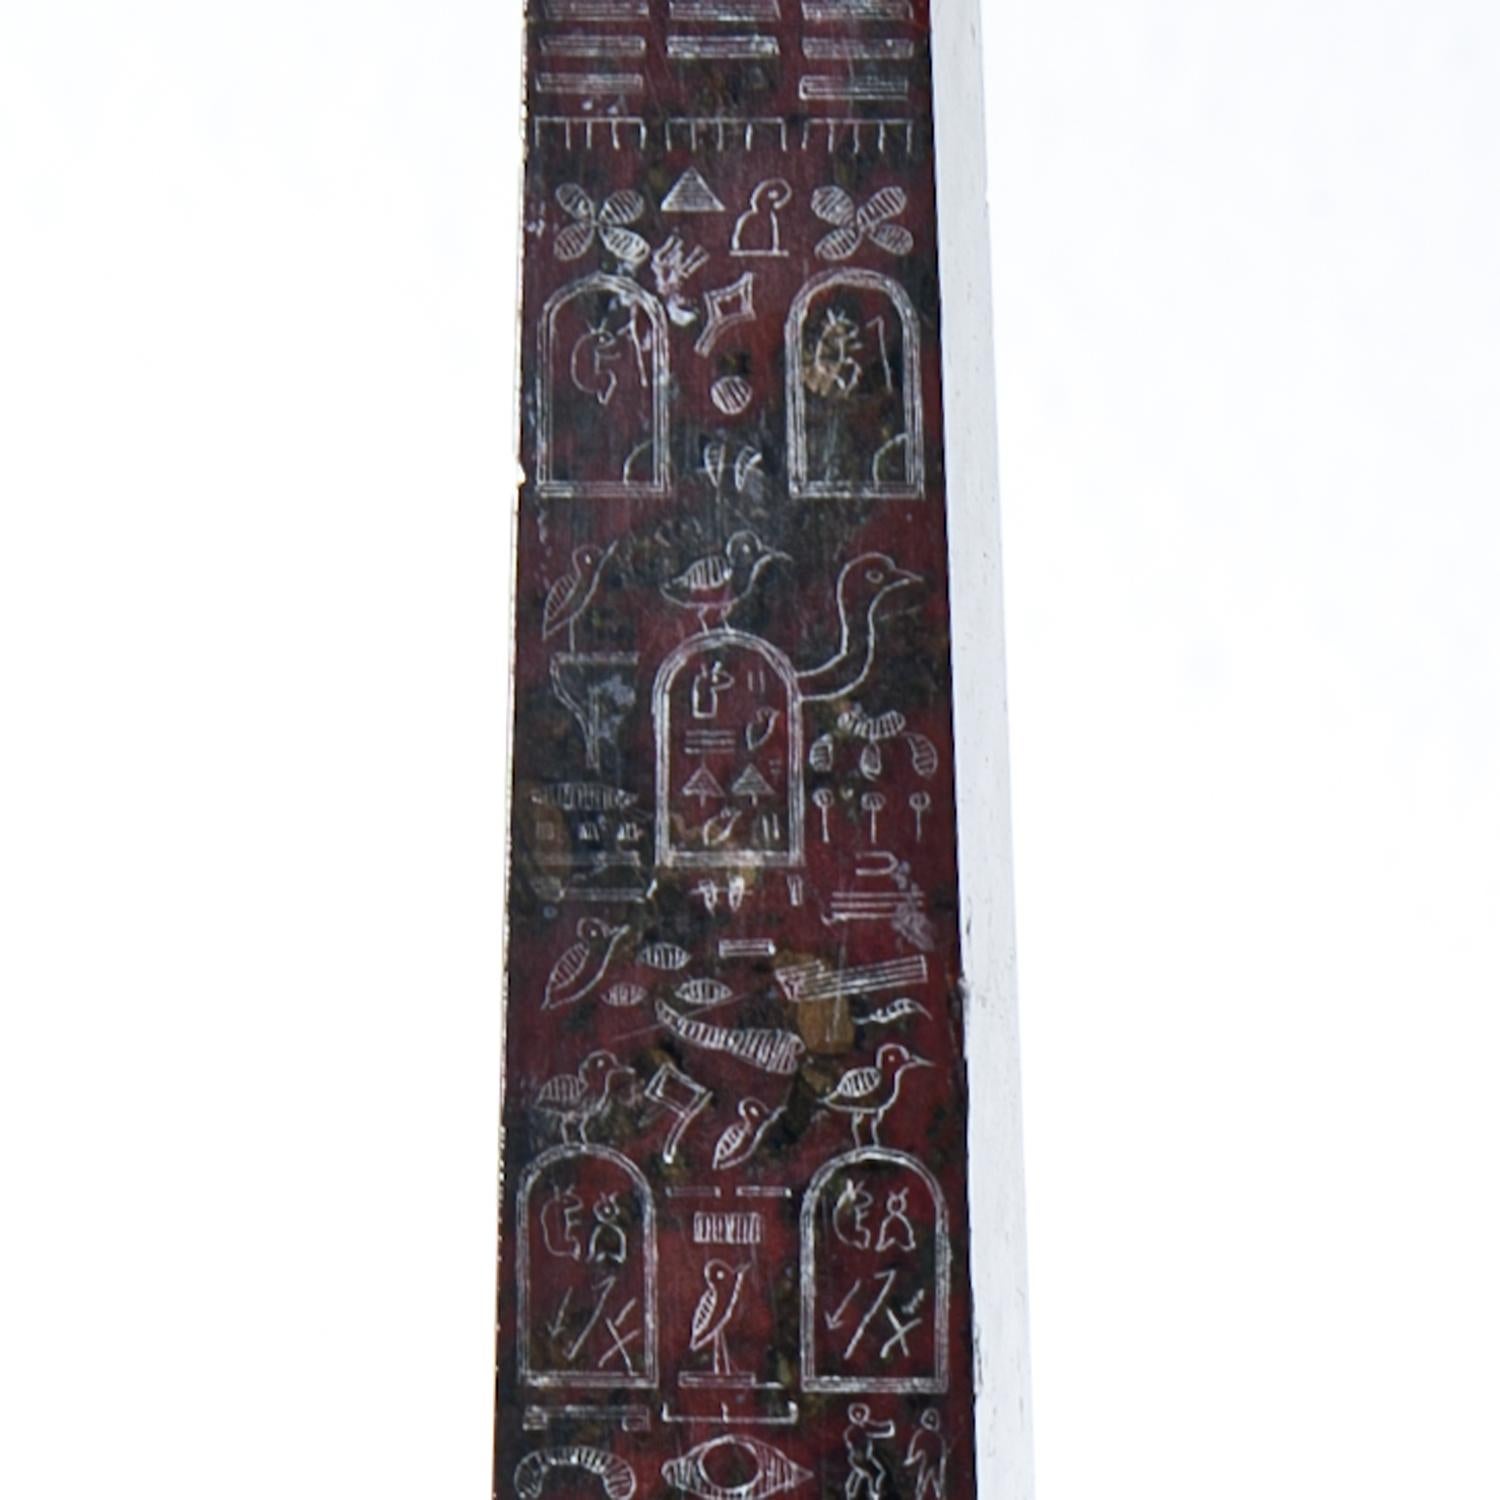 Zwei kleine Obelisken aus rotem Serpentin mit Hieroglyphendekor (Nordseite Cleopatra's Needle, heute Central Park, NY - und Lateranobelisk auf der Piazza San Giovanni zu Laterano 1588 von Sixtus V. aufgestellt)